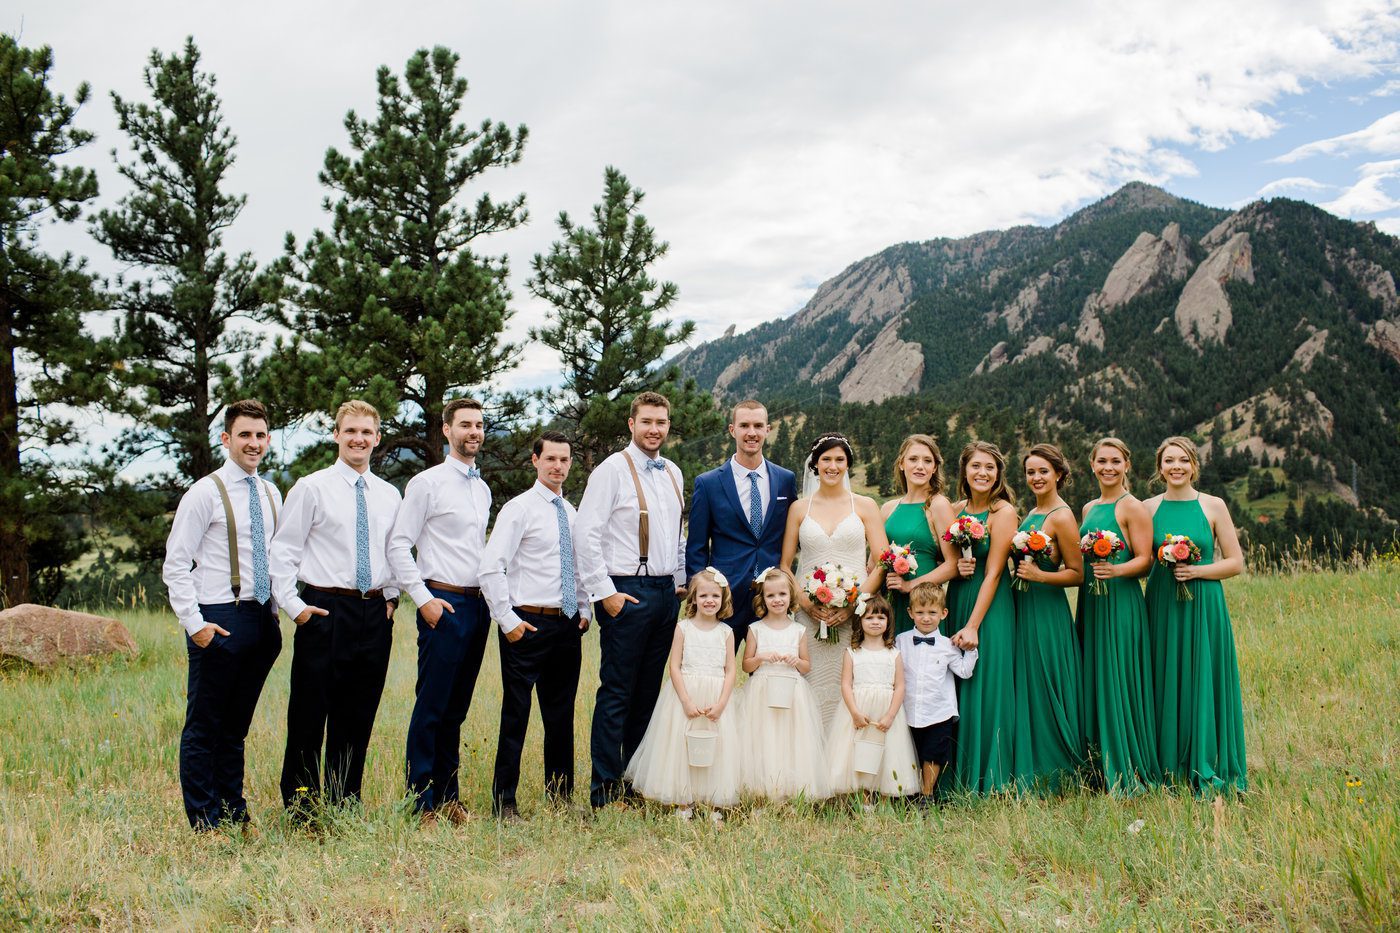 Bridal Party Photos in Boulder Colorado Wedding